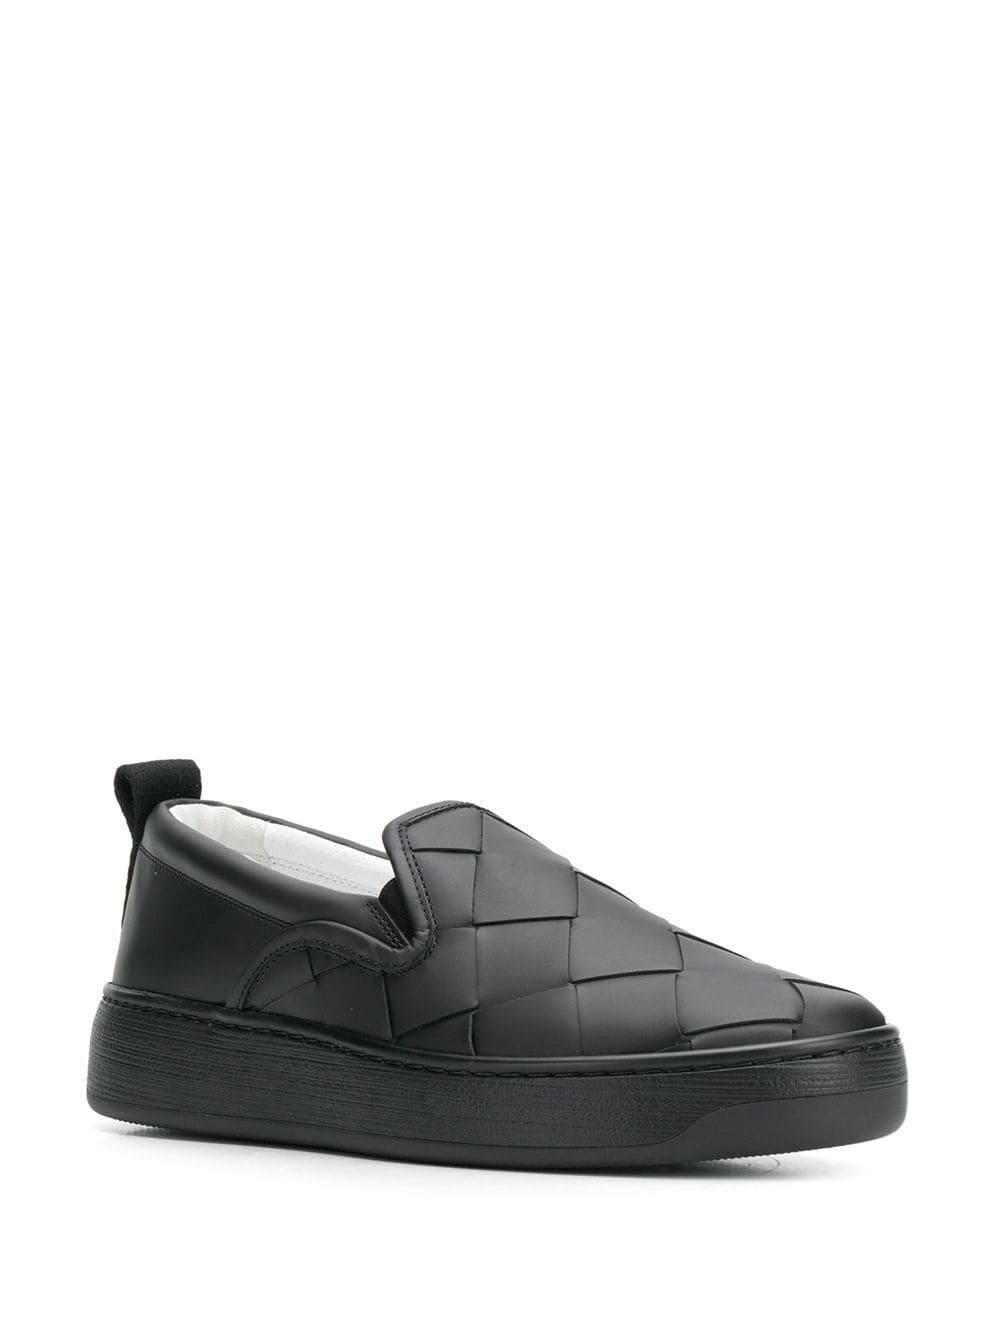 Bottega Veneta Leather Intrecciato Slip-on Sneakers in Black - Save 21% ...